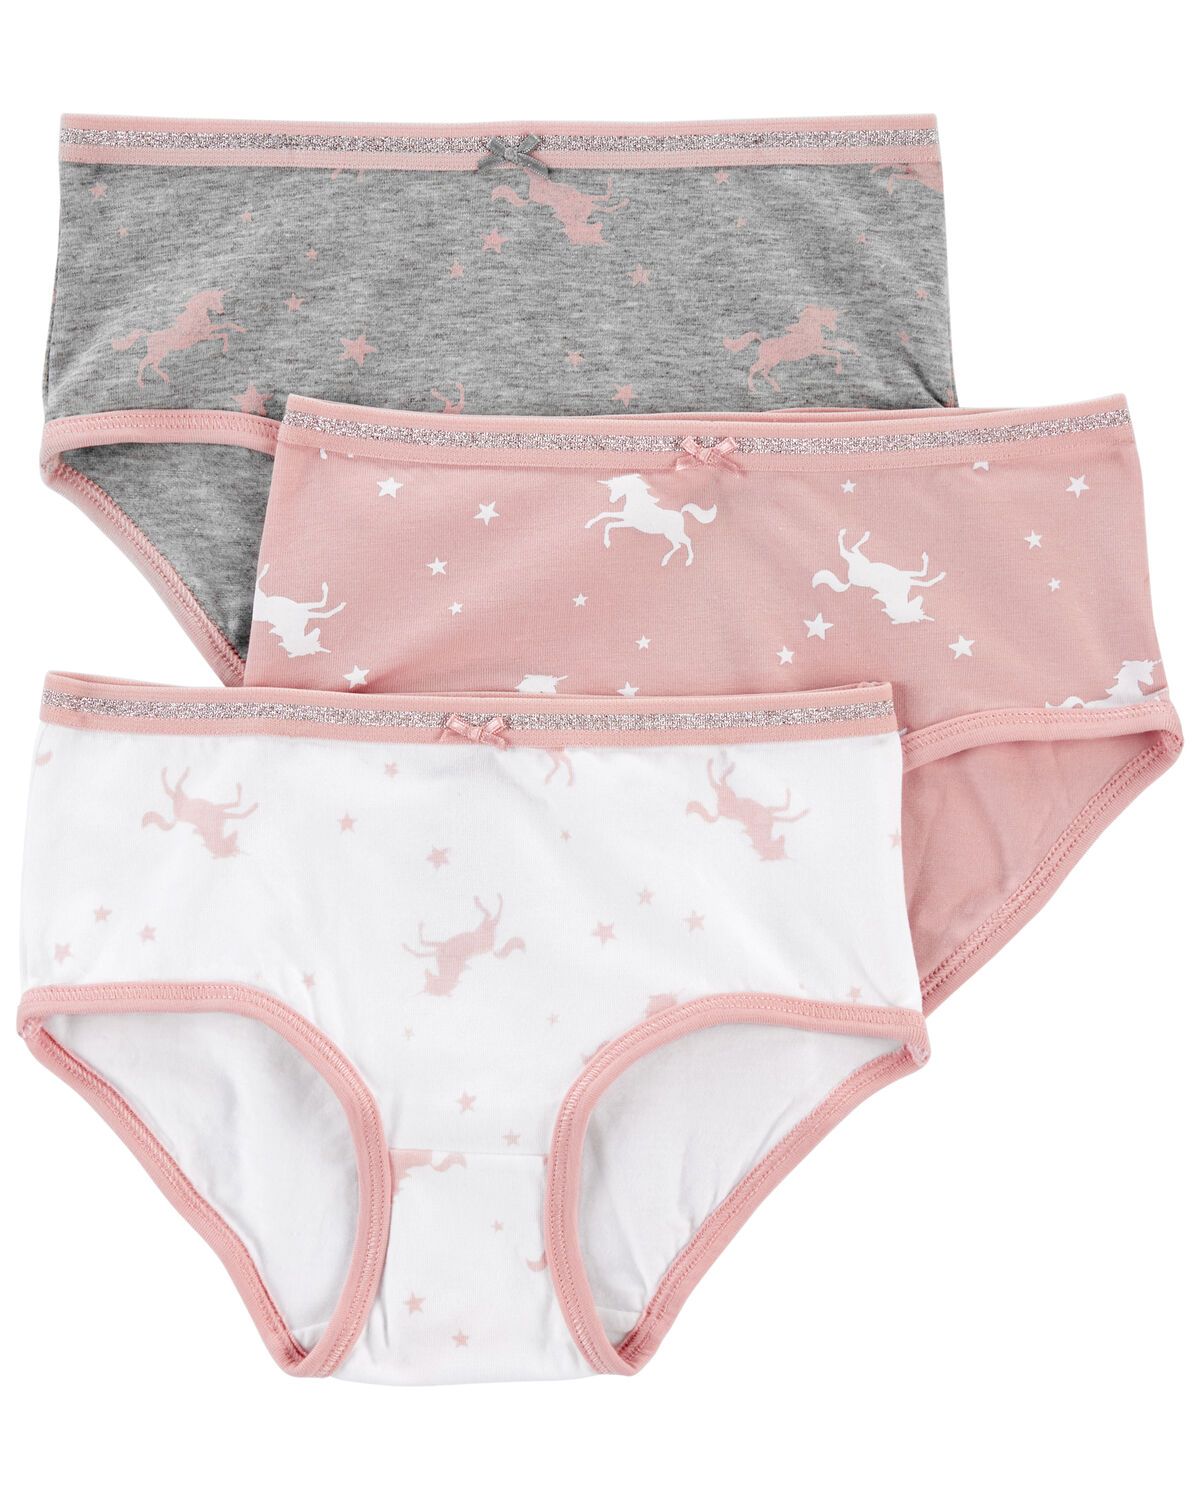  Tiny Undies Unisex Baby Underwear 3 Pack (6 Months